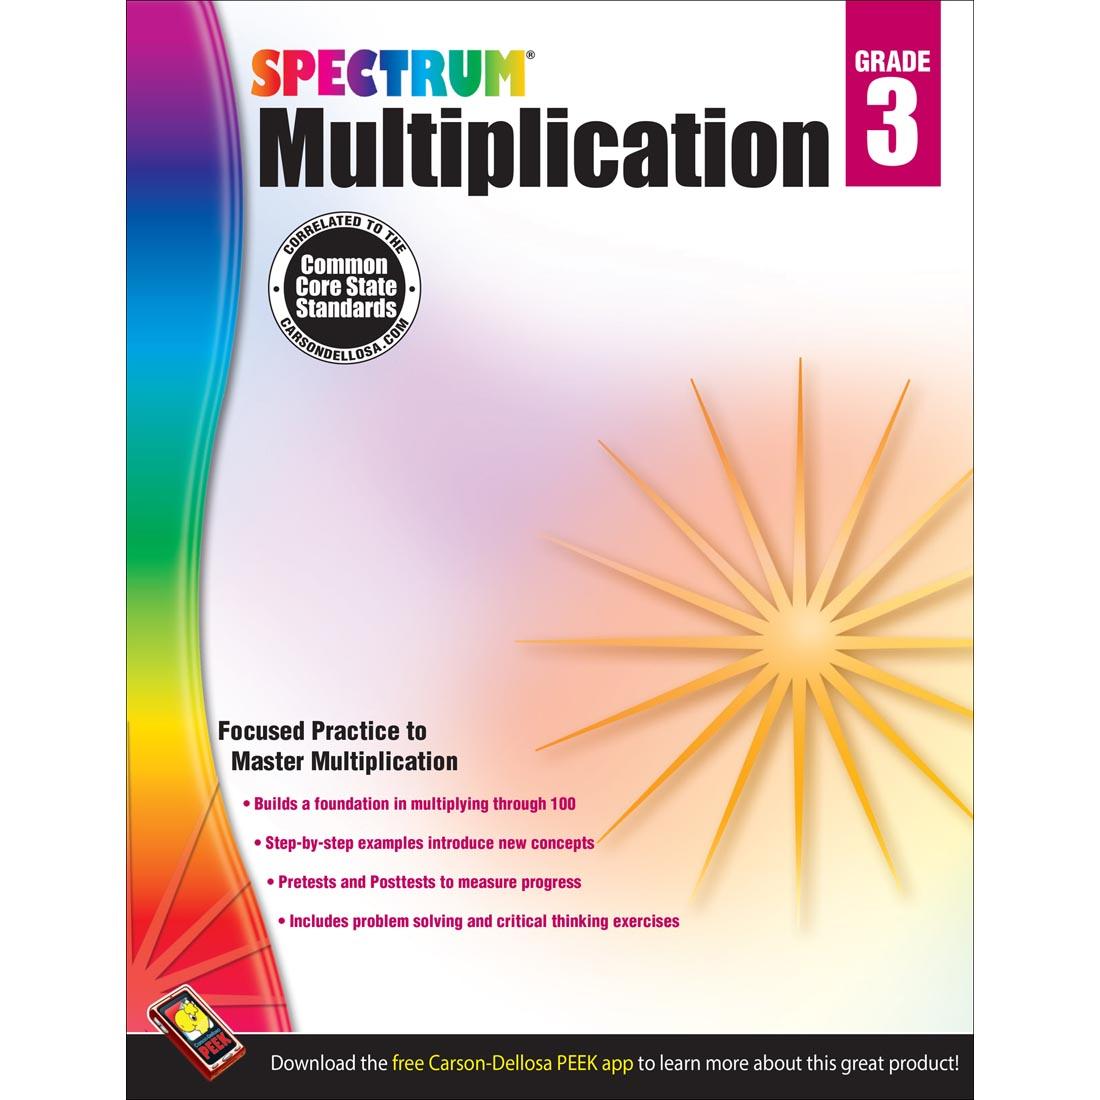 Spectrum Multiplication by Carson Dellosa Grade 3